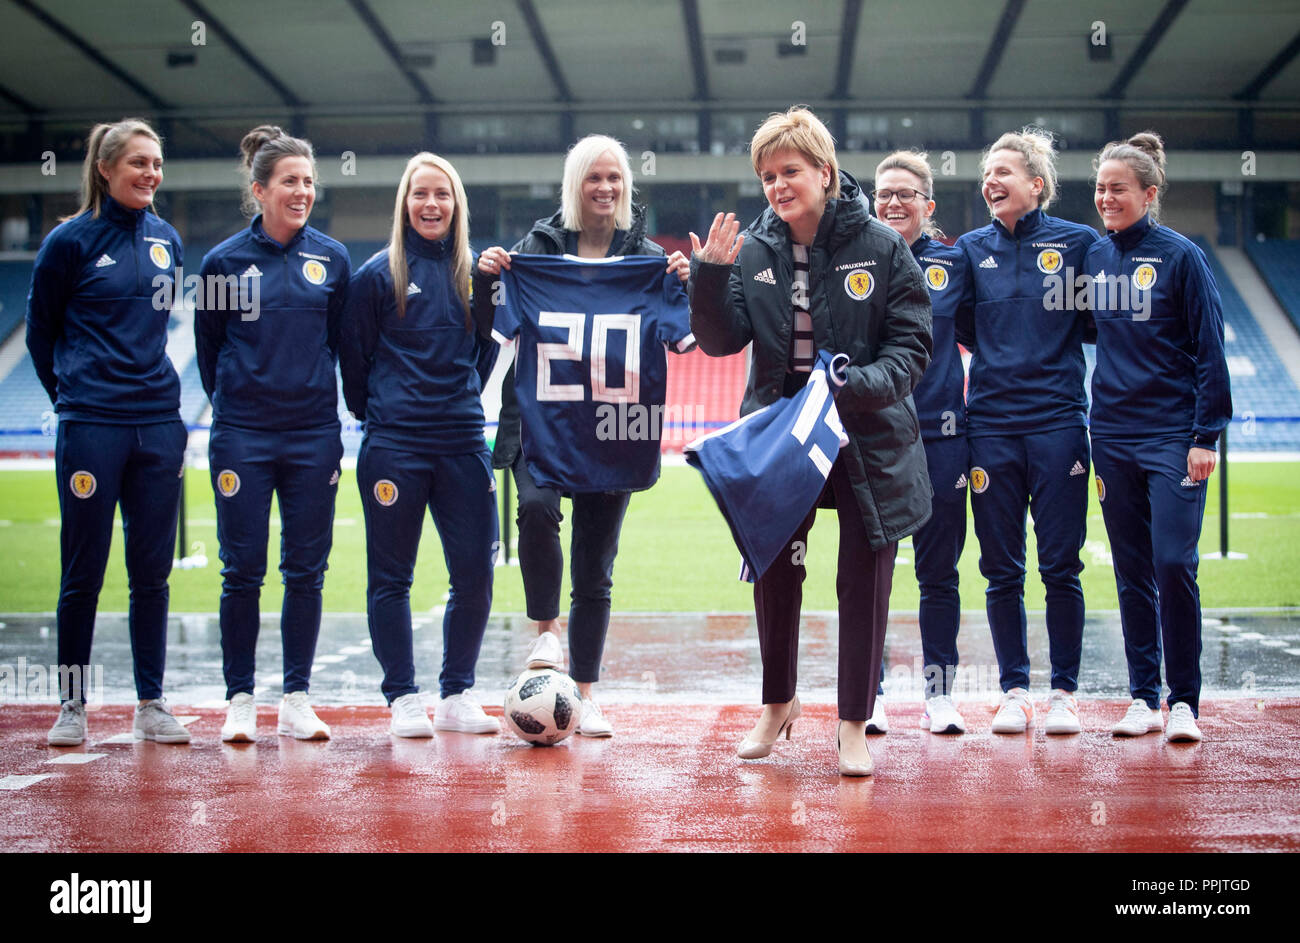 Premier ministre Nicola Sturgeon (centre droit) annonce le financement de l'équipe nationale de football de la femme, avec l'entraîneur national Shelley Kerr (centre gauche), et certains des premiers joueurs dans l'équipe, à Hampden Park, Glasgow. Banque D'Images